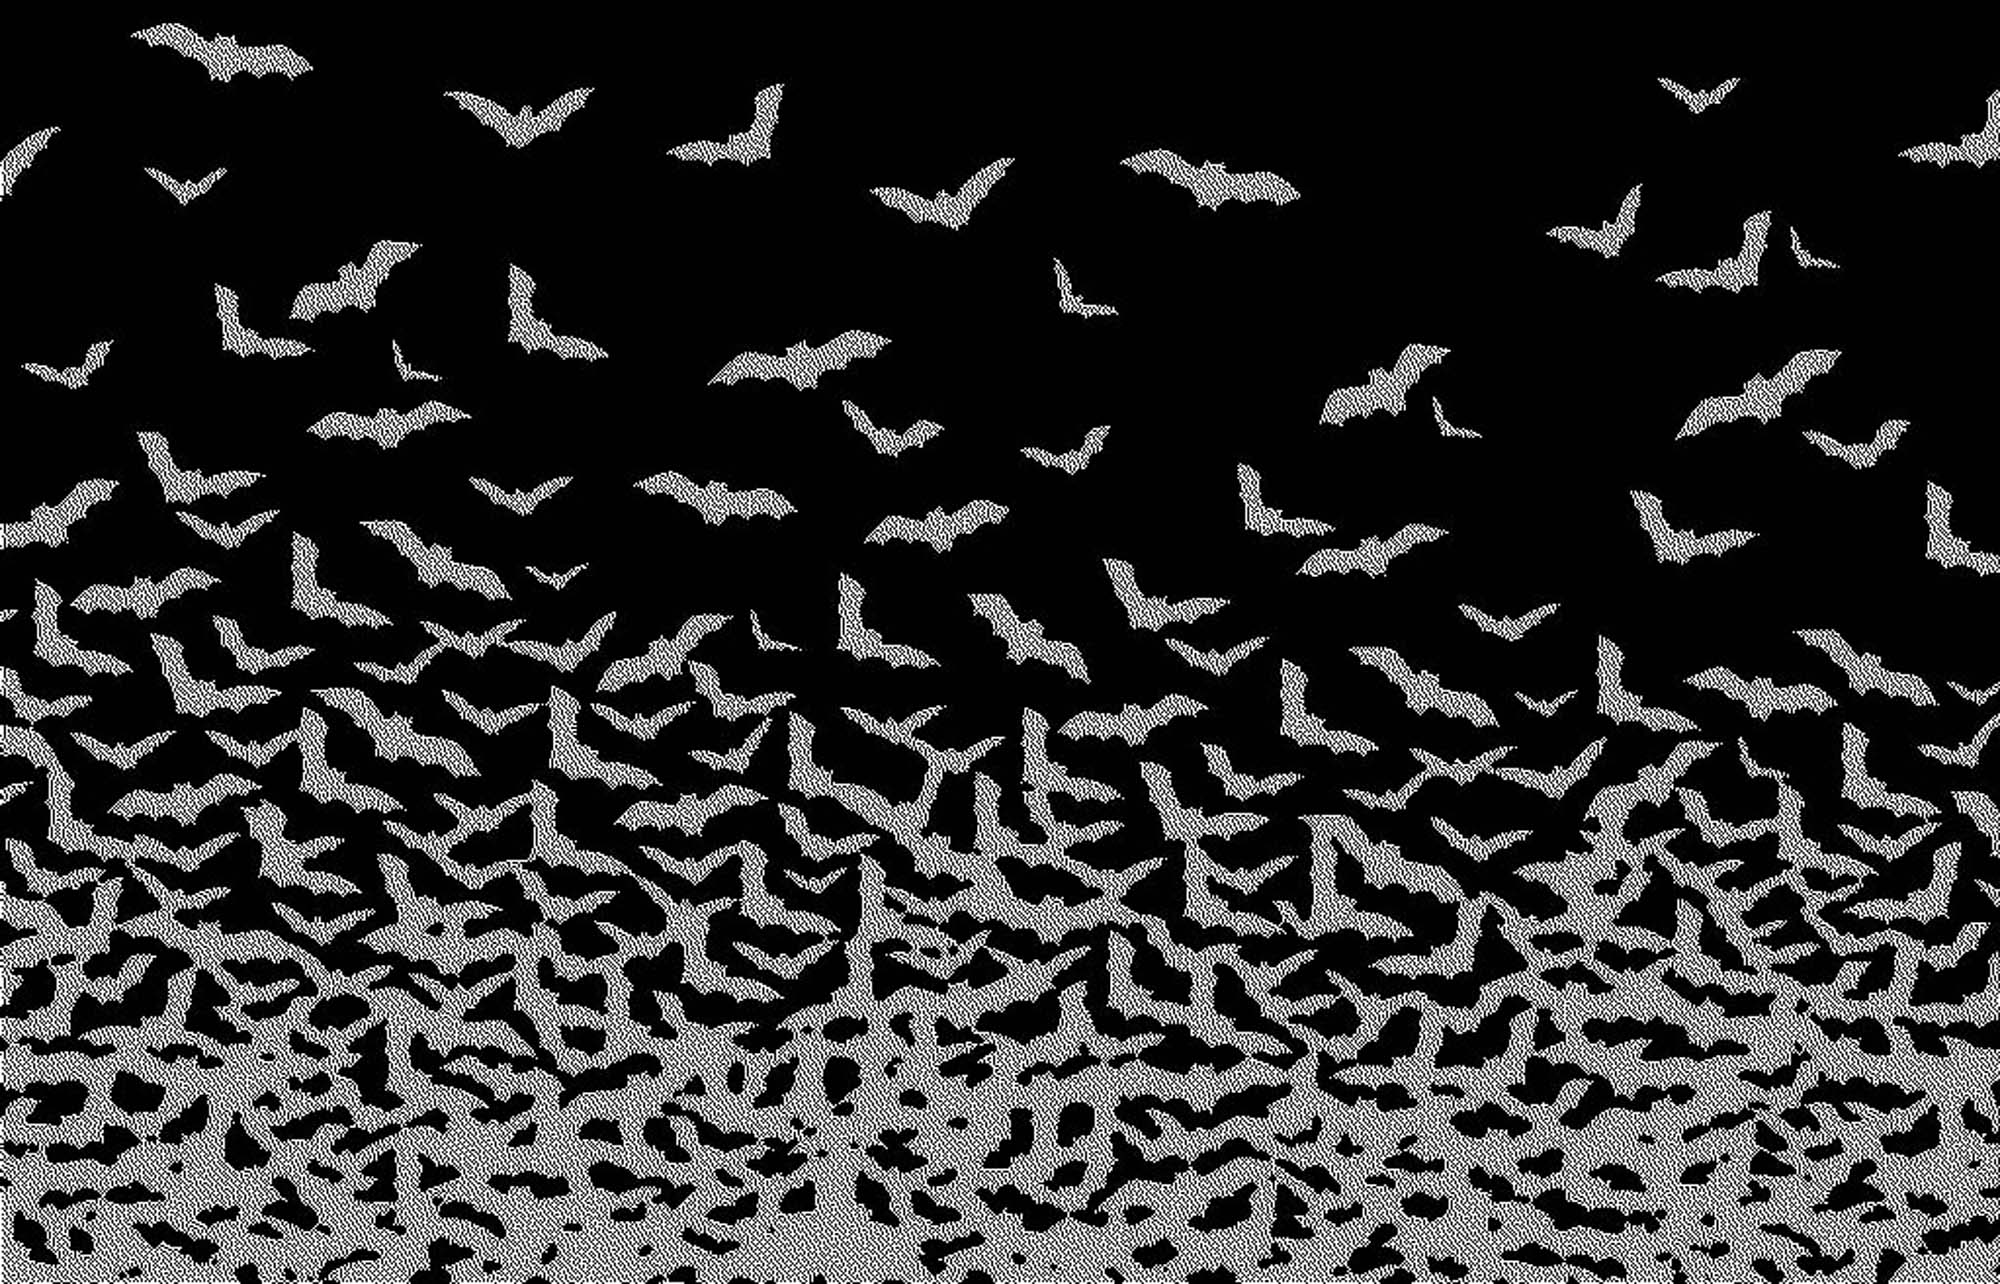 Bats Wallpaper Group (67)